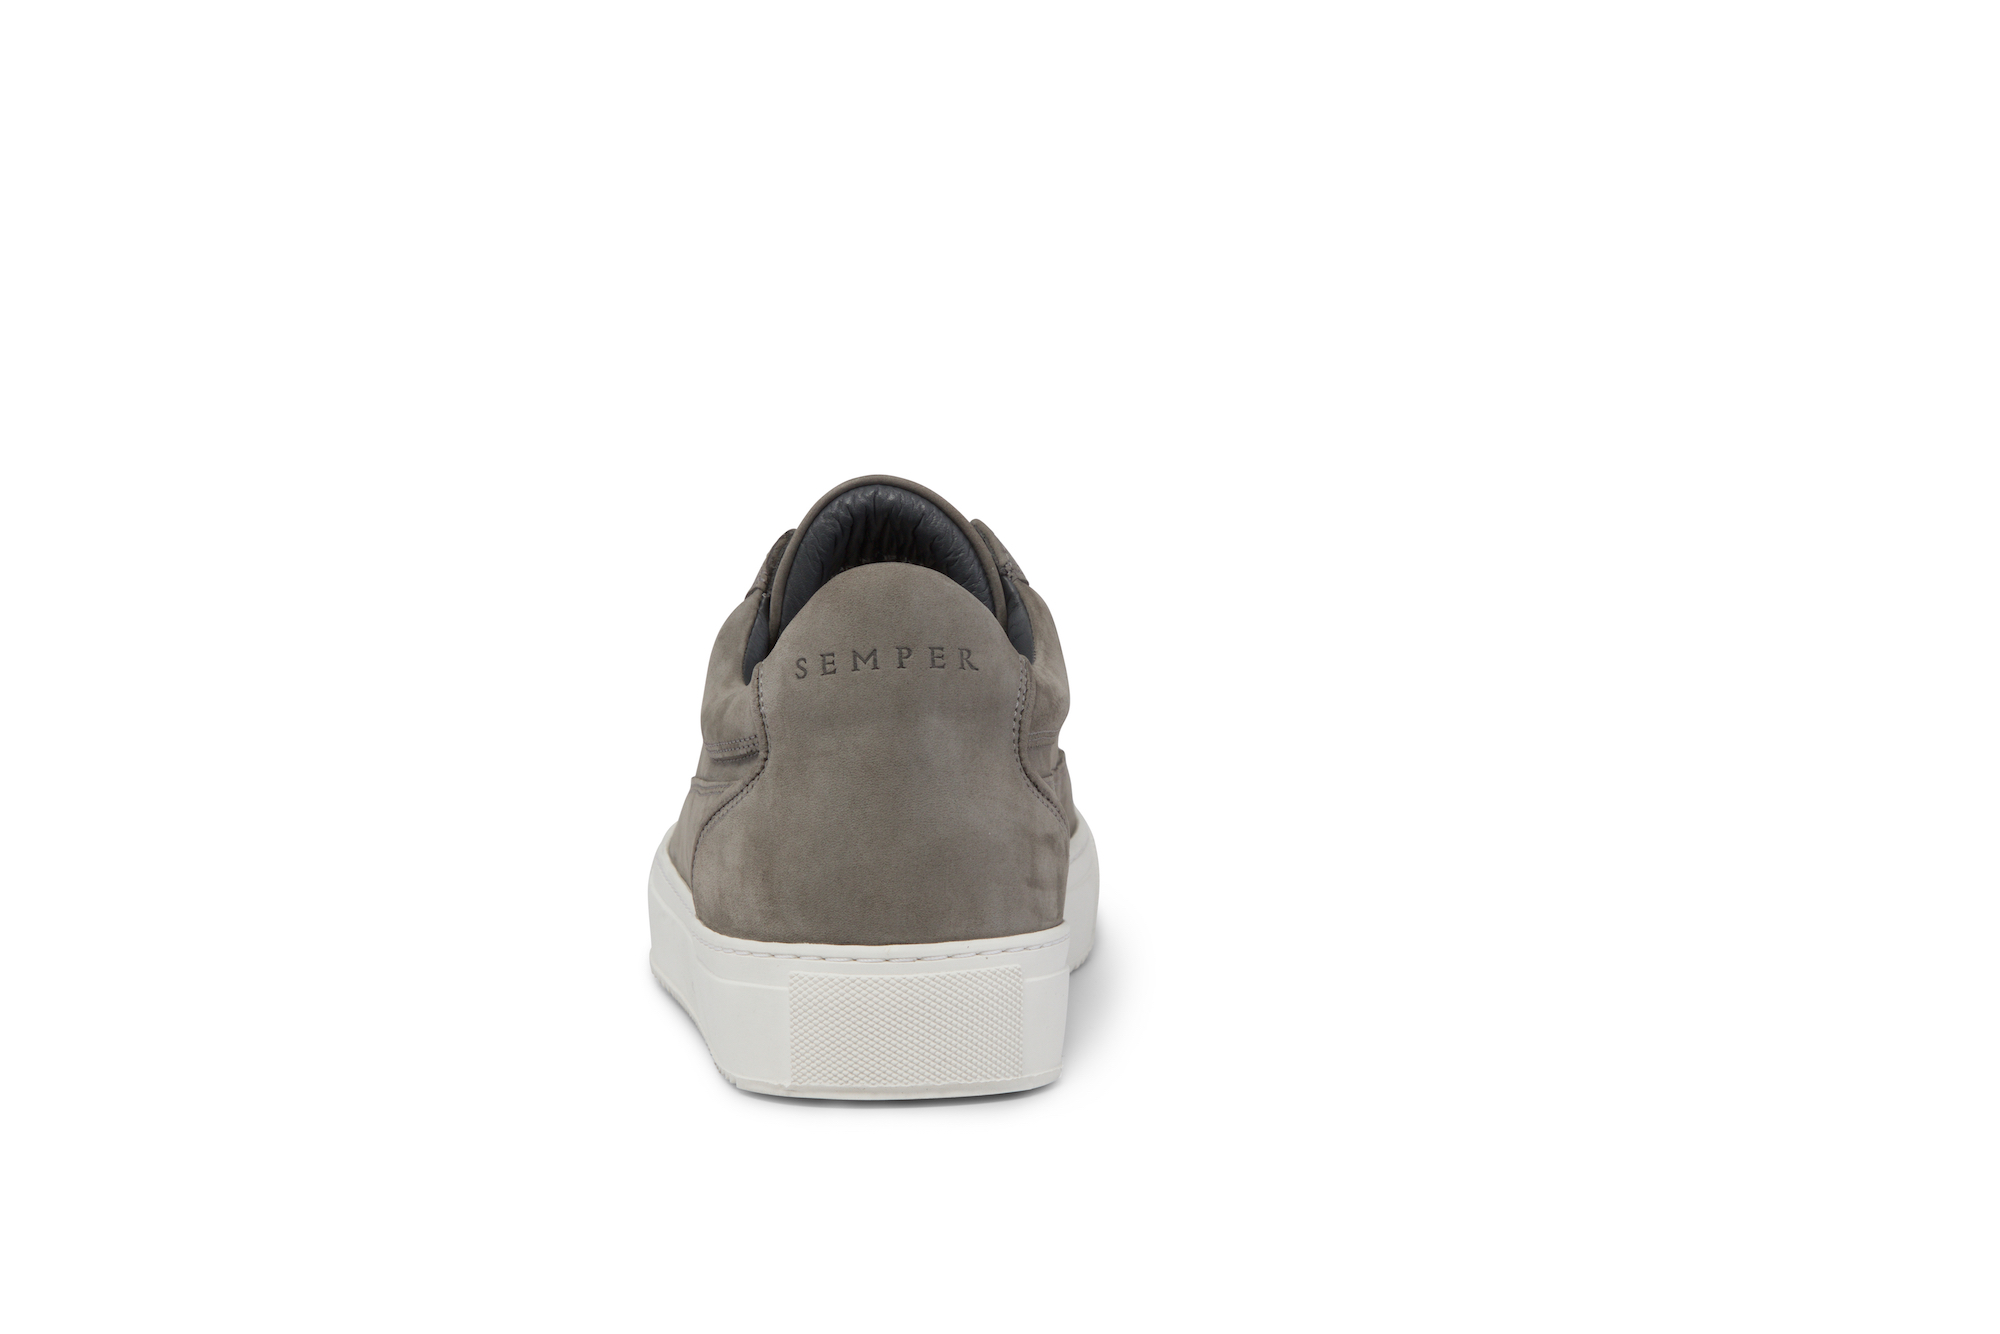 Griseo Grey Low Top | SEMPER footwear